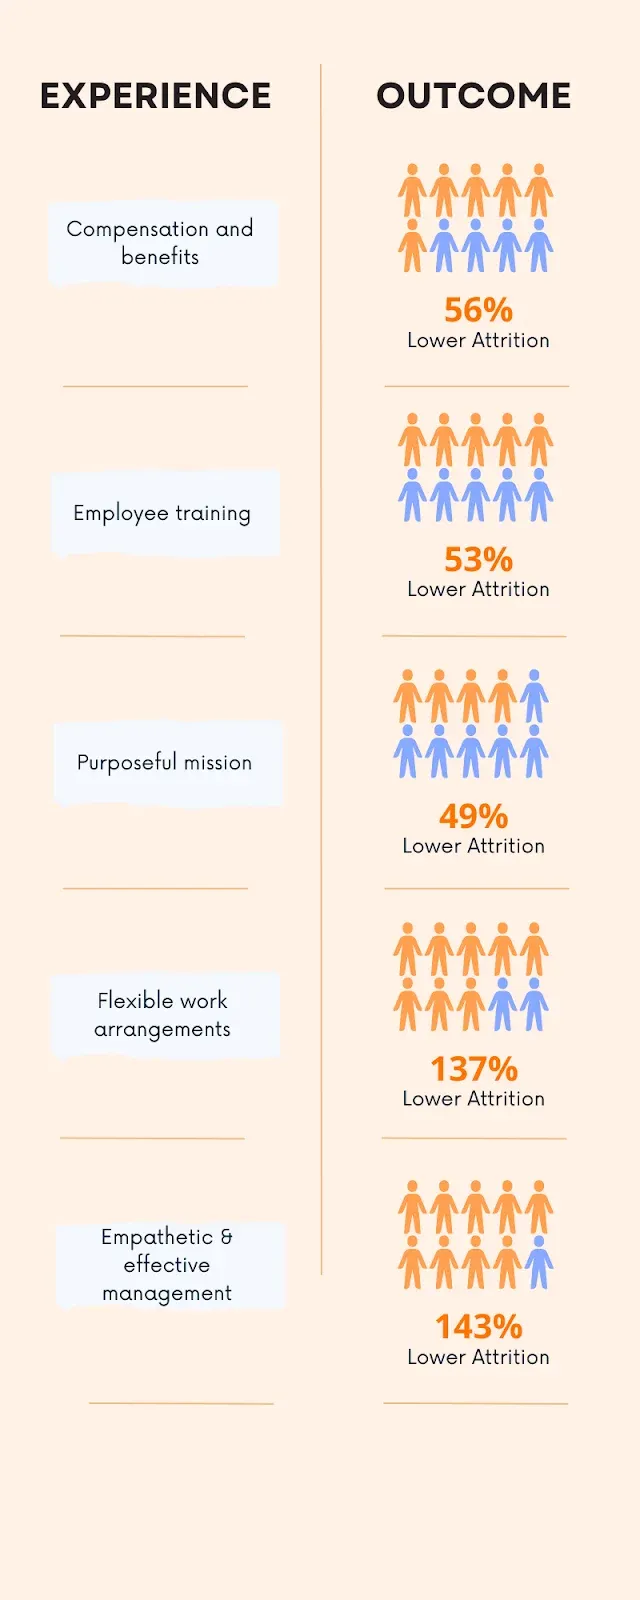 Quelle: LinkedIn, Global Talent Trends 2020Auswirkungen von Strategien für gute Erfahrungen auf das Geschäft